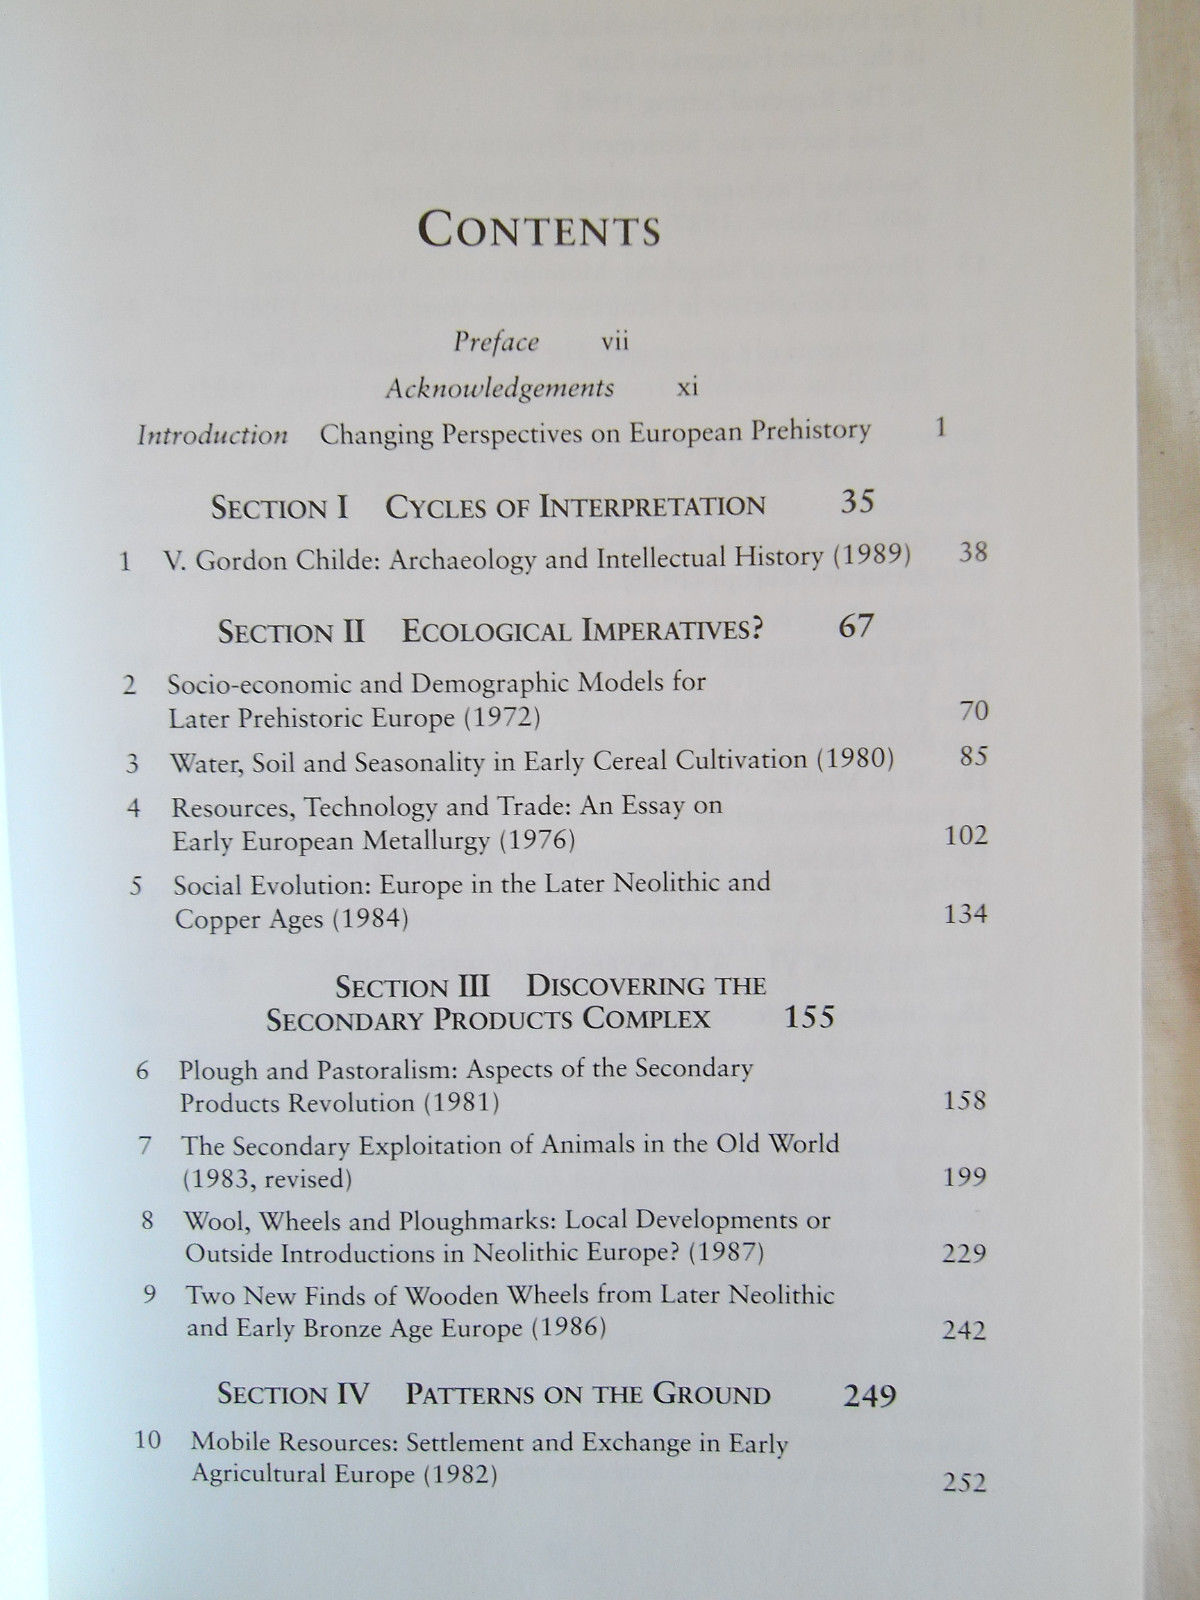 Economy and Society in Prehistoric Europe - Andrew Sherratt - Economics 1997